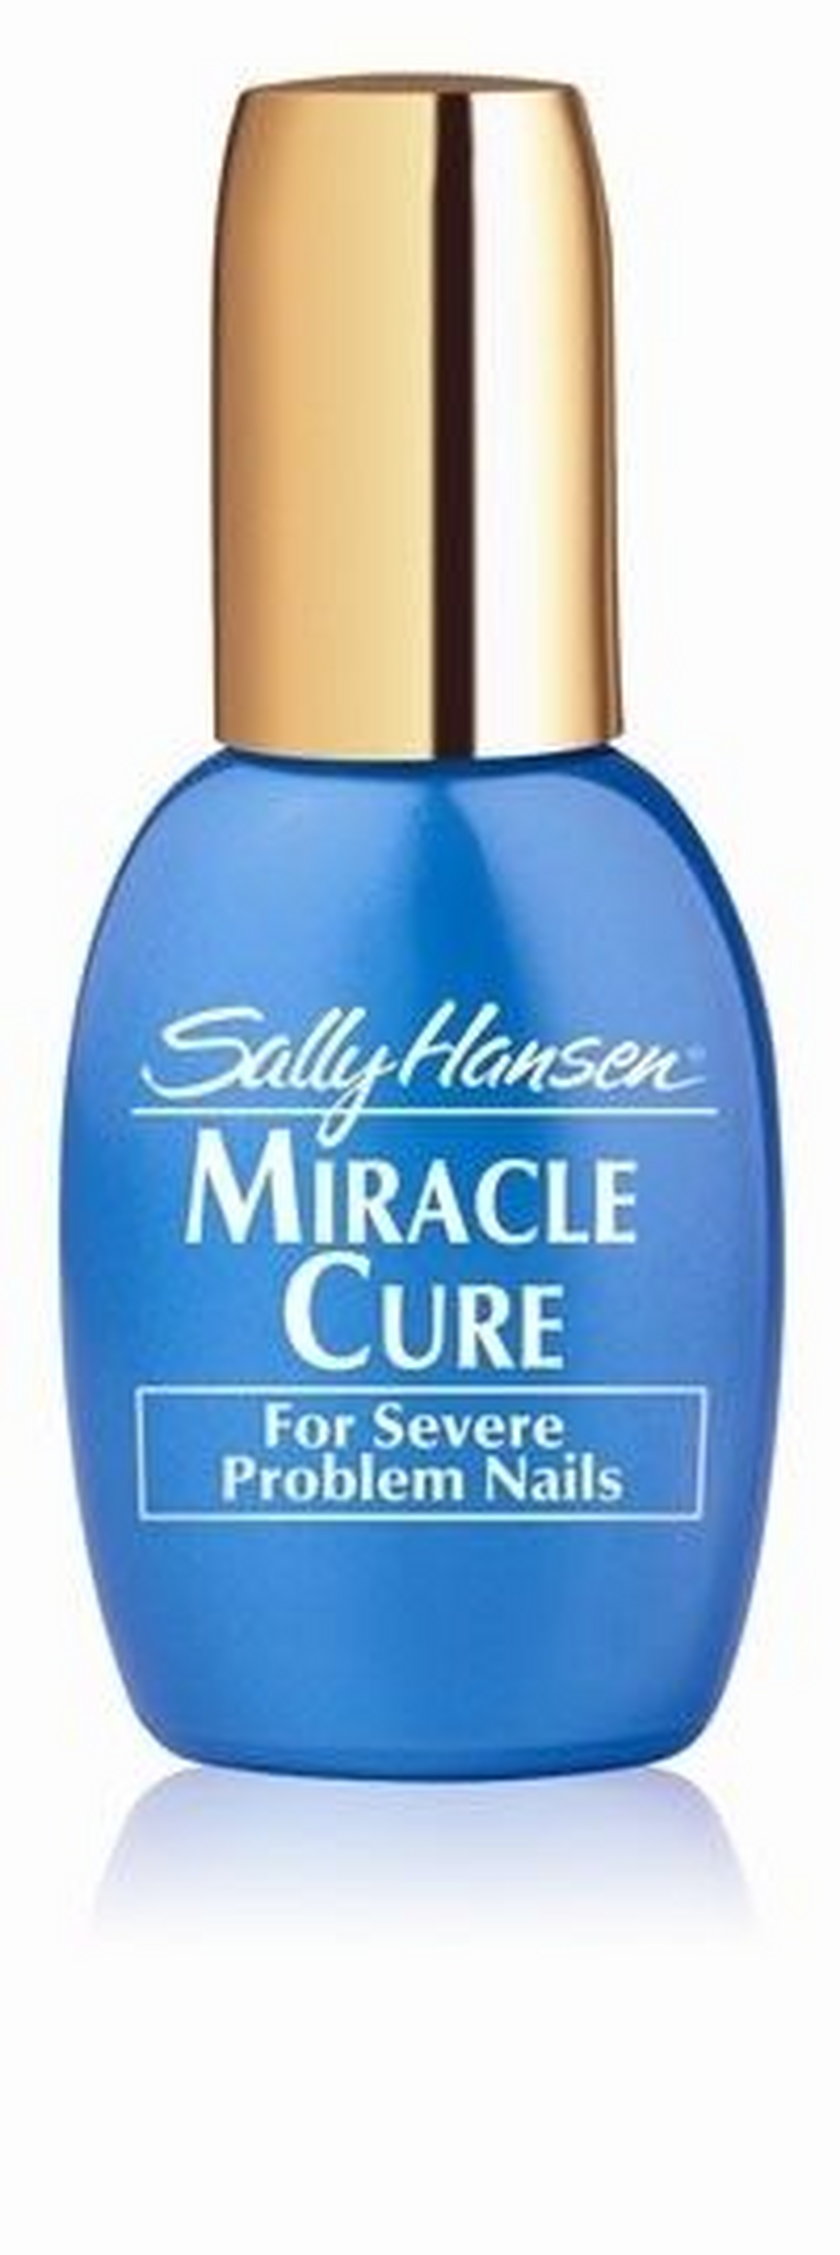 Sally Hansen Miracle Cure 